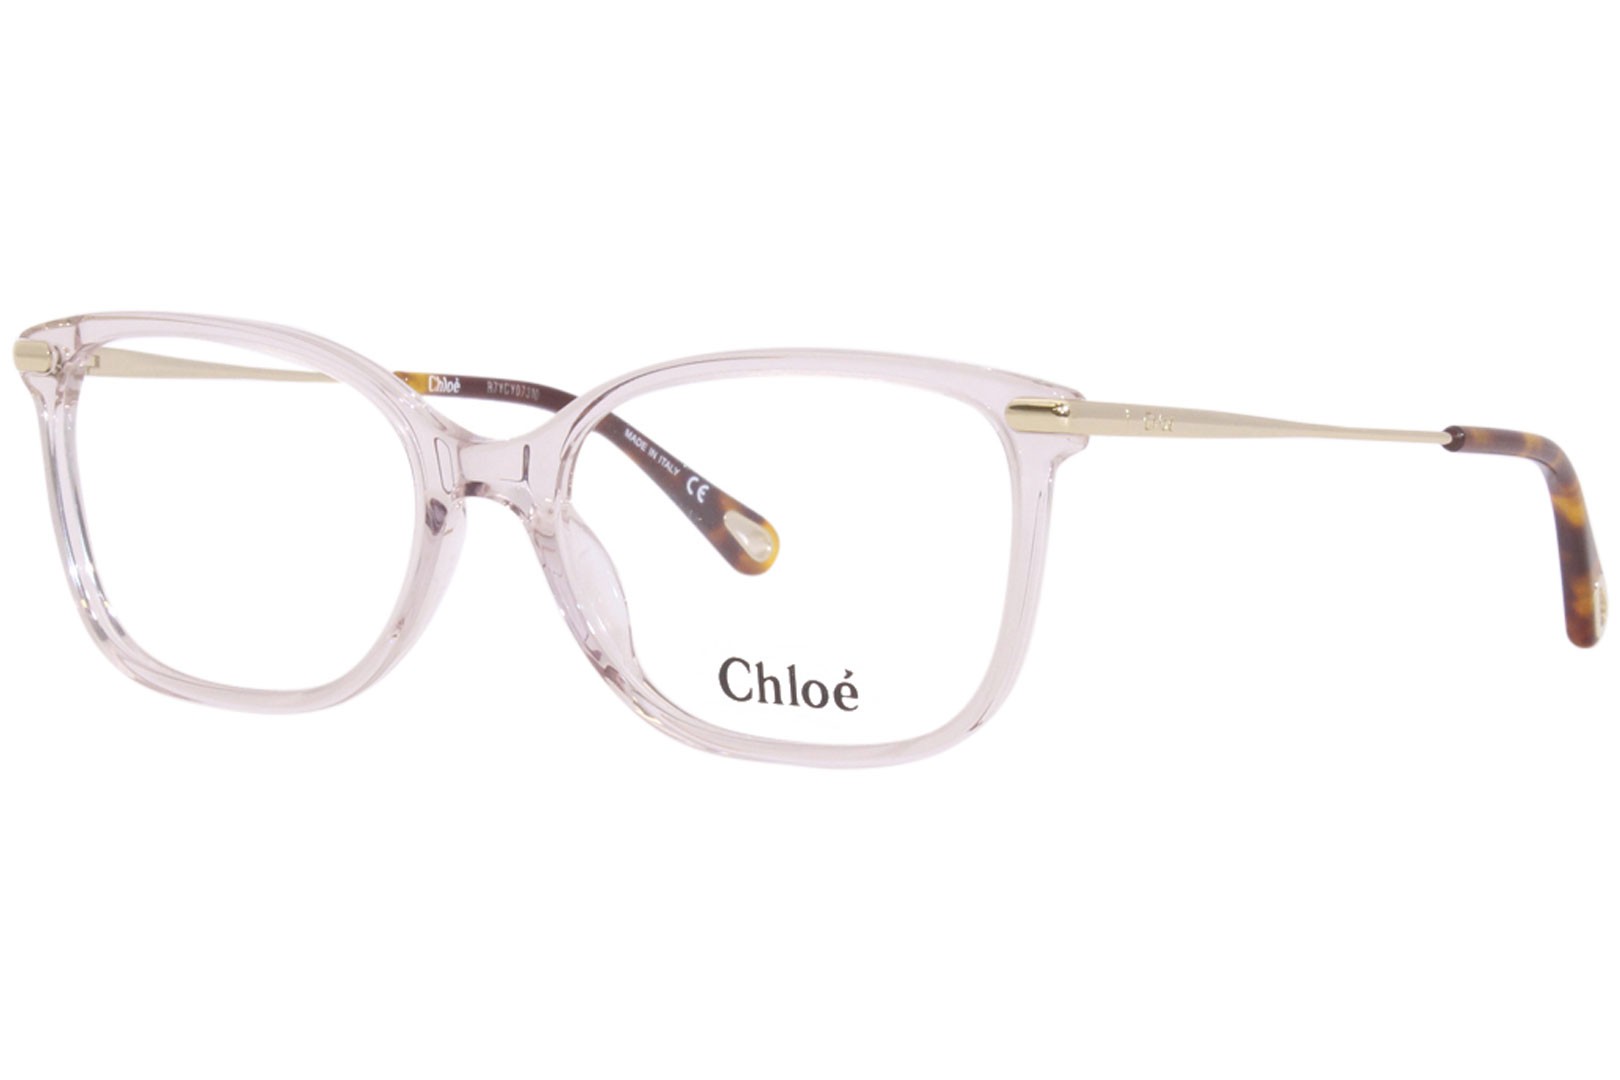 Chloe 59O 011 - Oculos de Grau